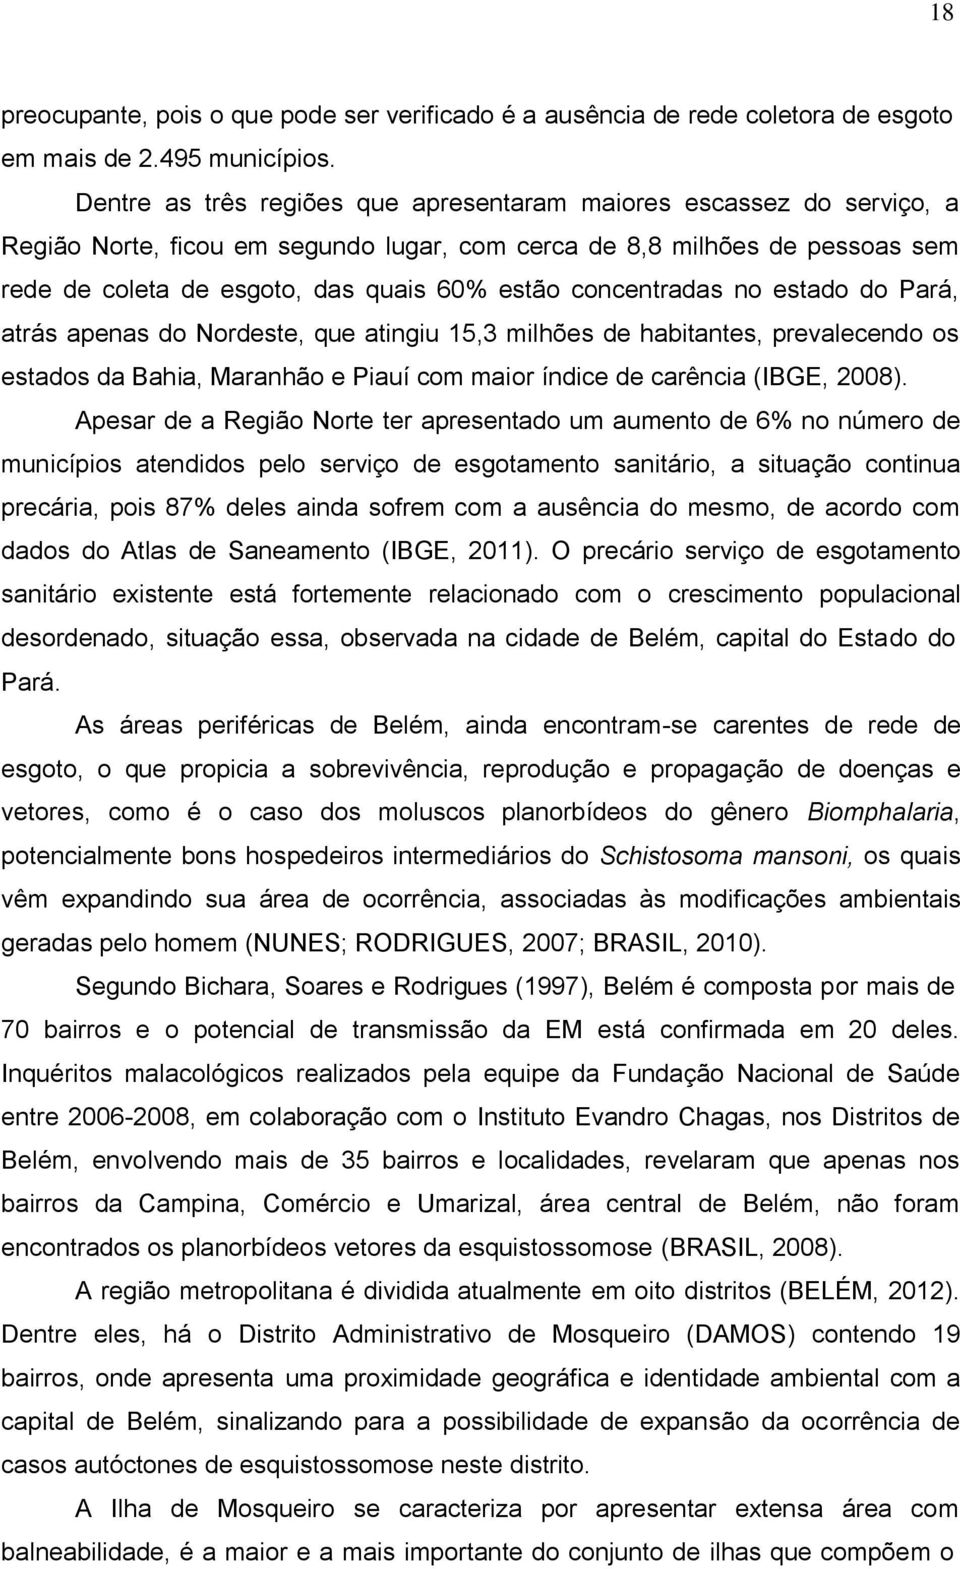 concentradas no estado do Pará, atrás apenas do Nordeste, que atingiu 15,3 milhões de habitantes, prevalecendo os estados da Bahia, Maranhão e Piauí com maior índice de carência (IBGE, 2008).